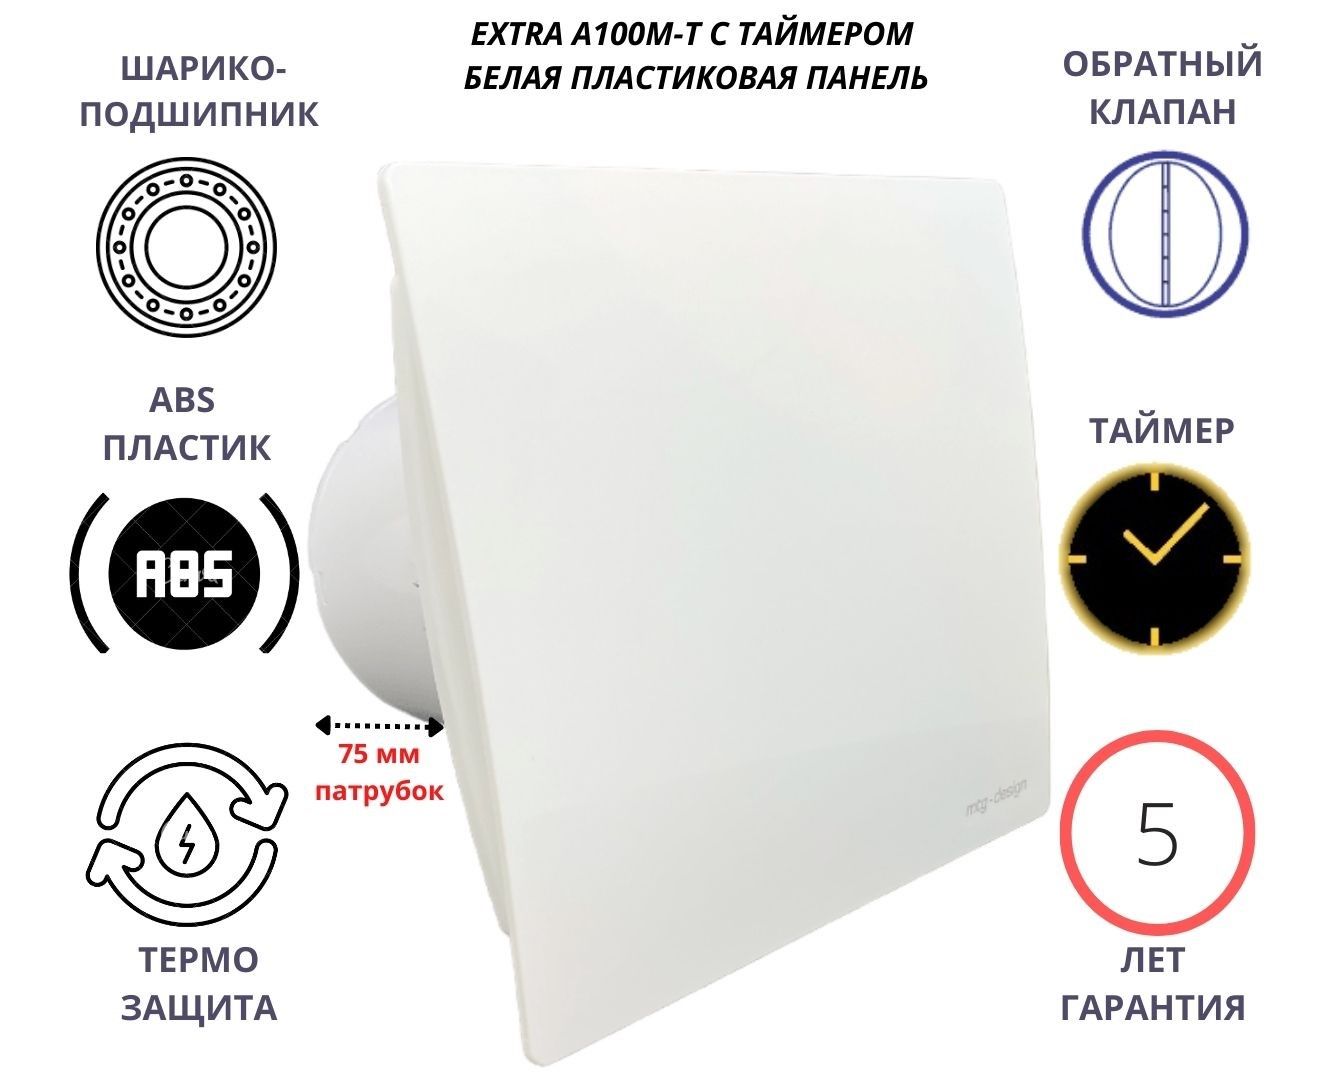 фото Вентилятор с таймером d100мм с пластиковой панелью a100m-t, сербия, белый mak trade group